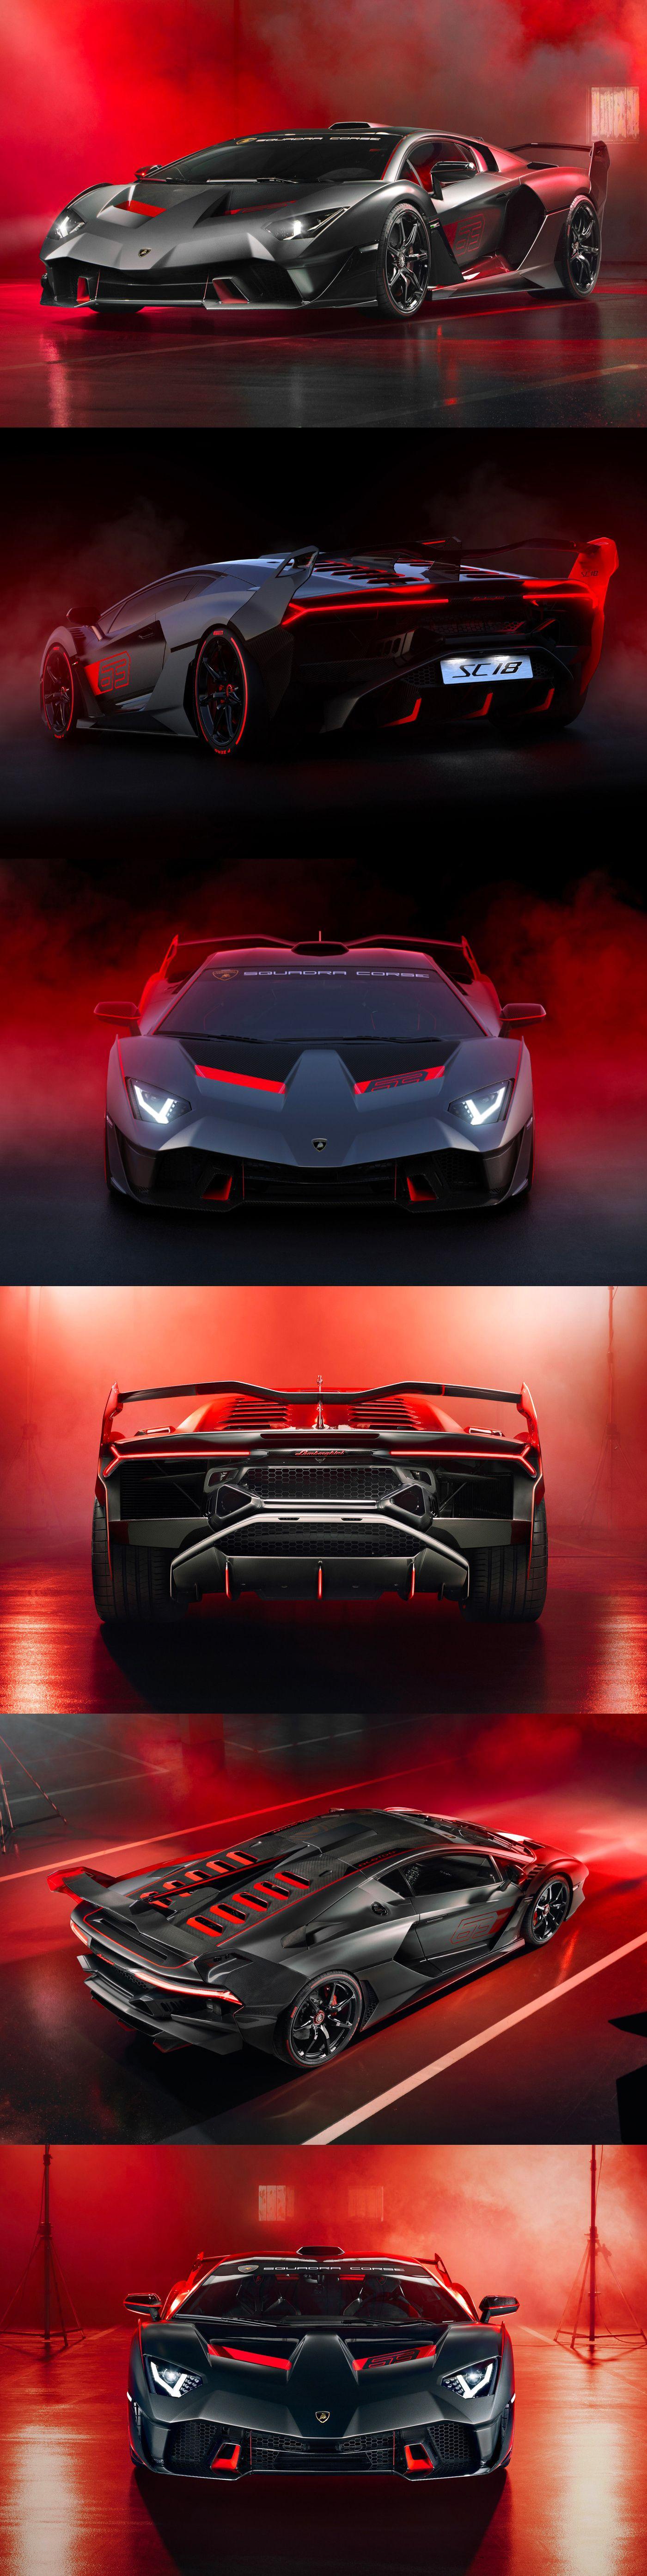 Lamborghini Sc18 Alston Wallpapers